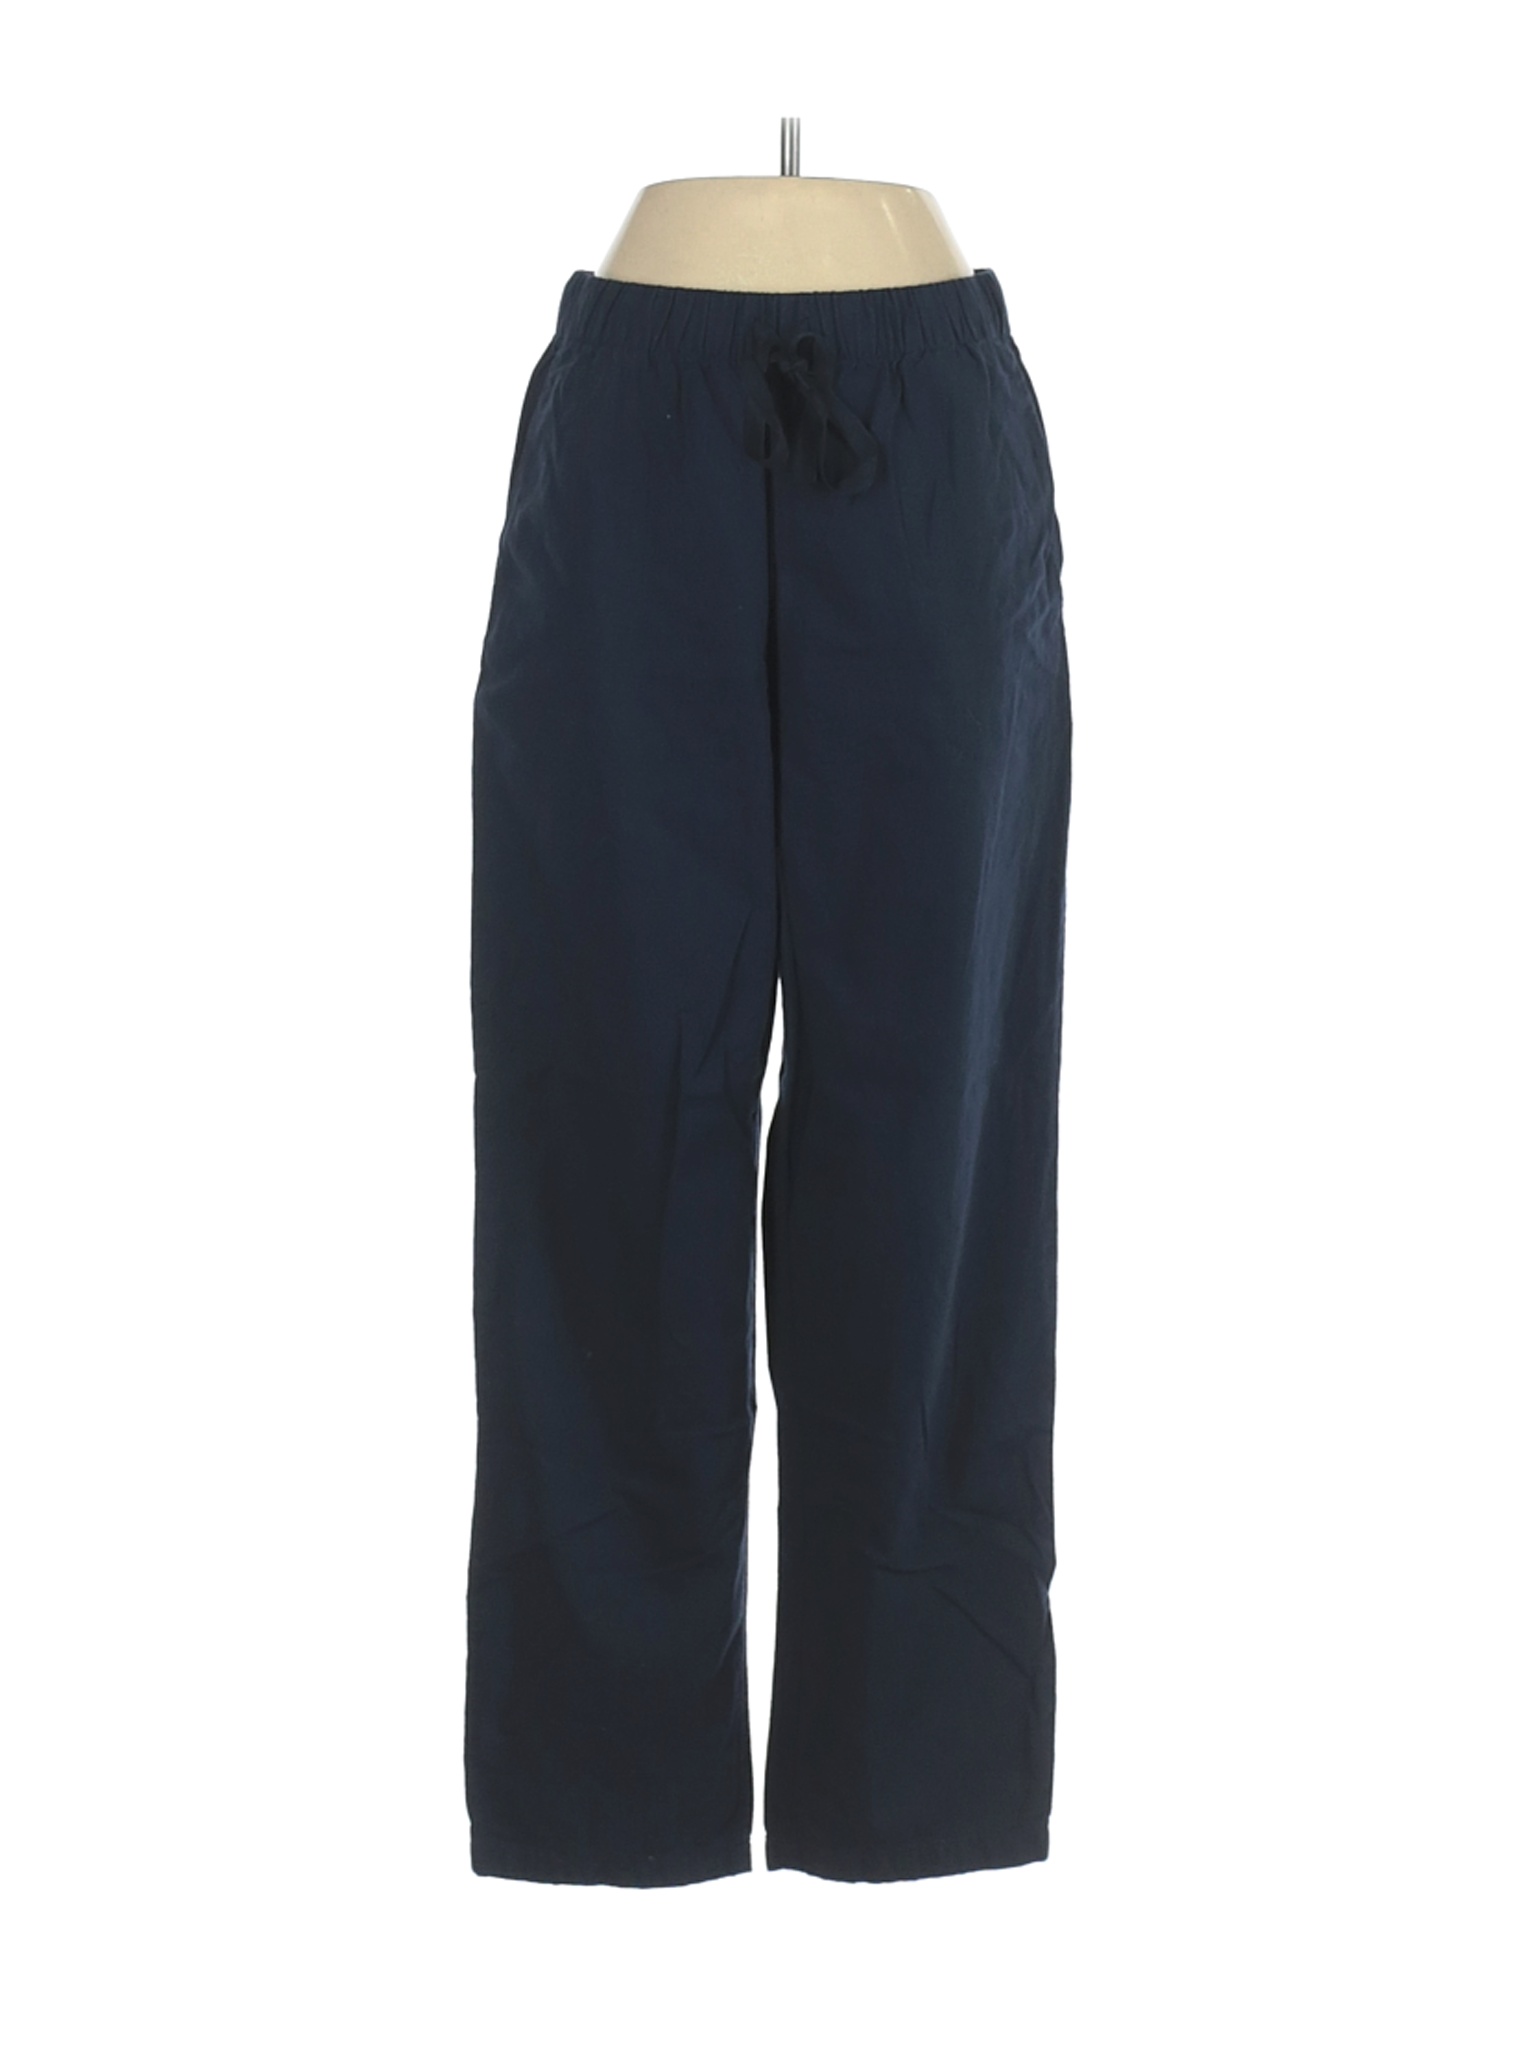 Uniqlo Women Blue Casual Pants S | eBay